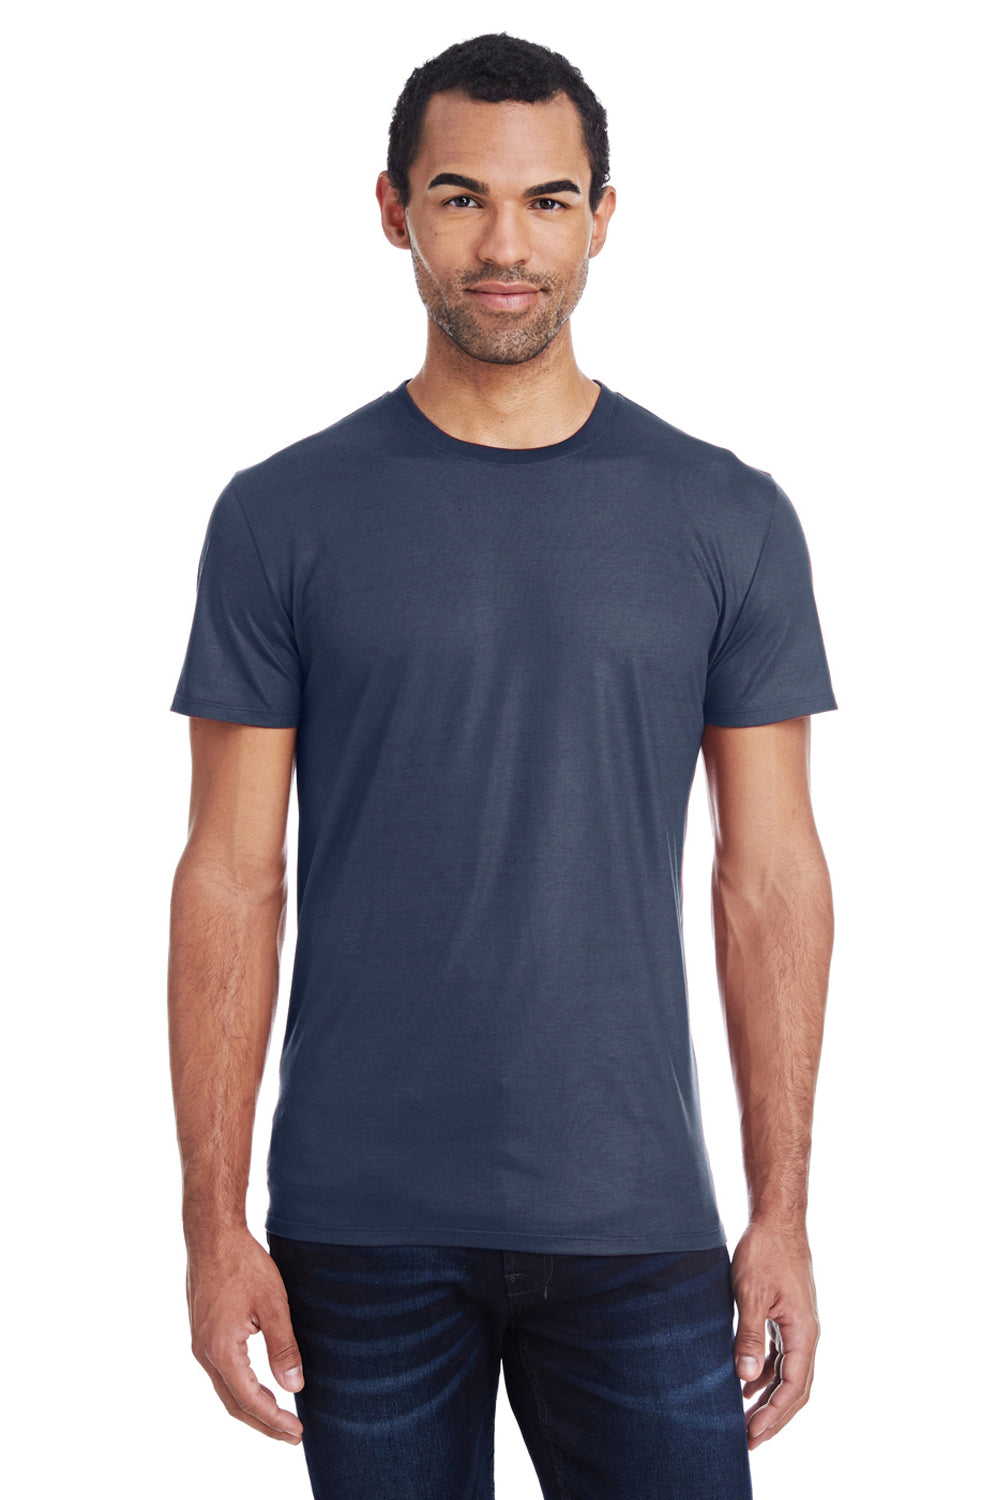 Threadfast Apparel 140A Mens Liquid Jersey Short Sleeve Crewneck T-Shirt Navy Blue Front